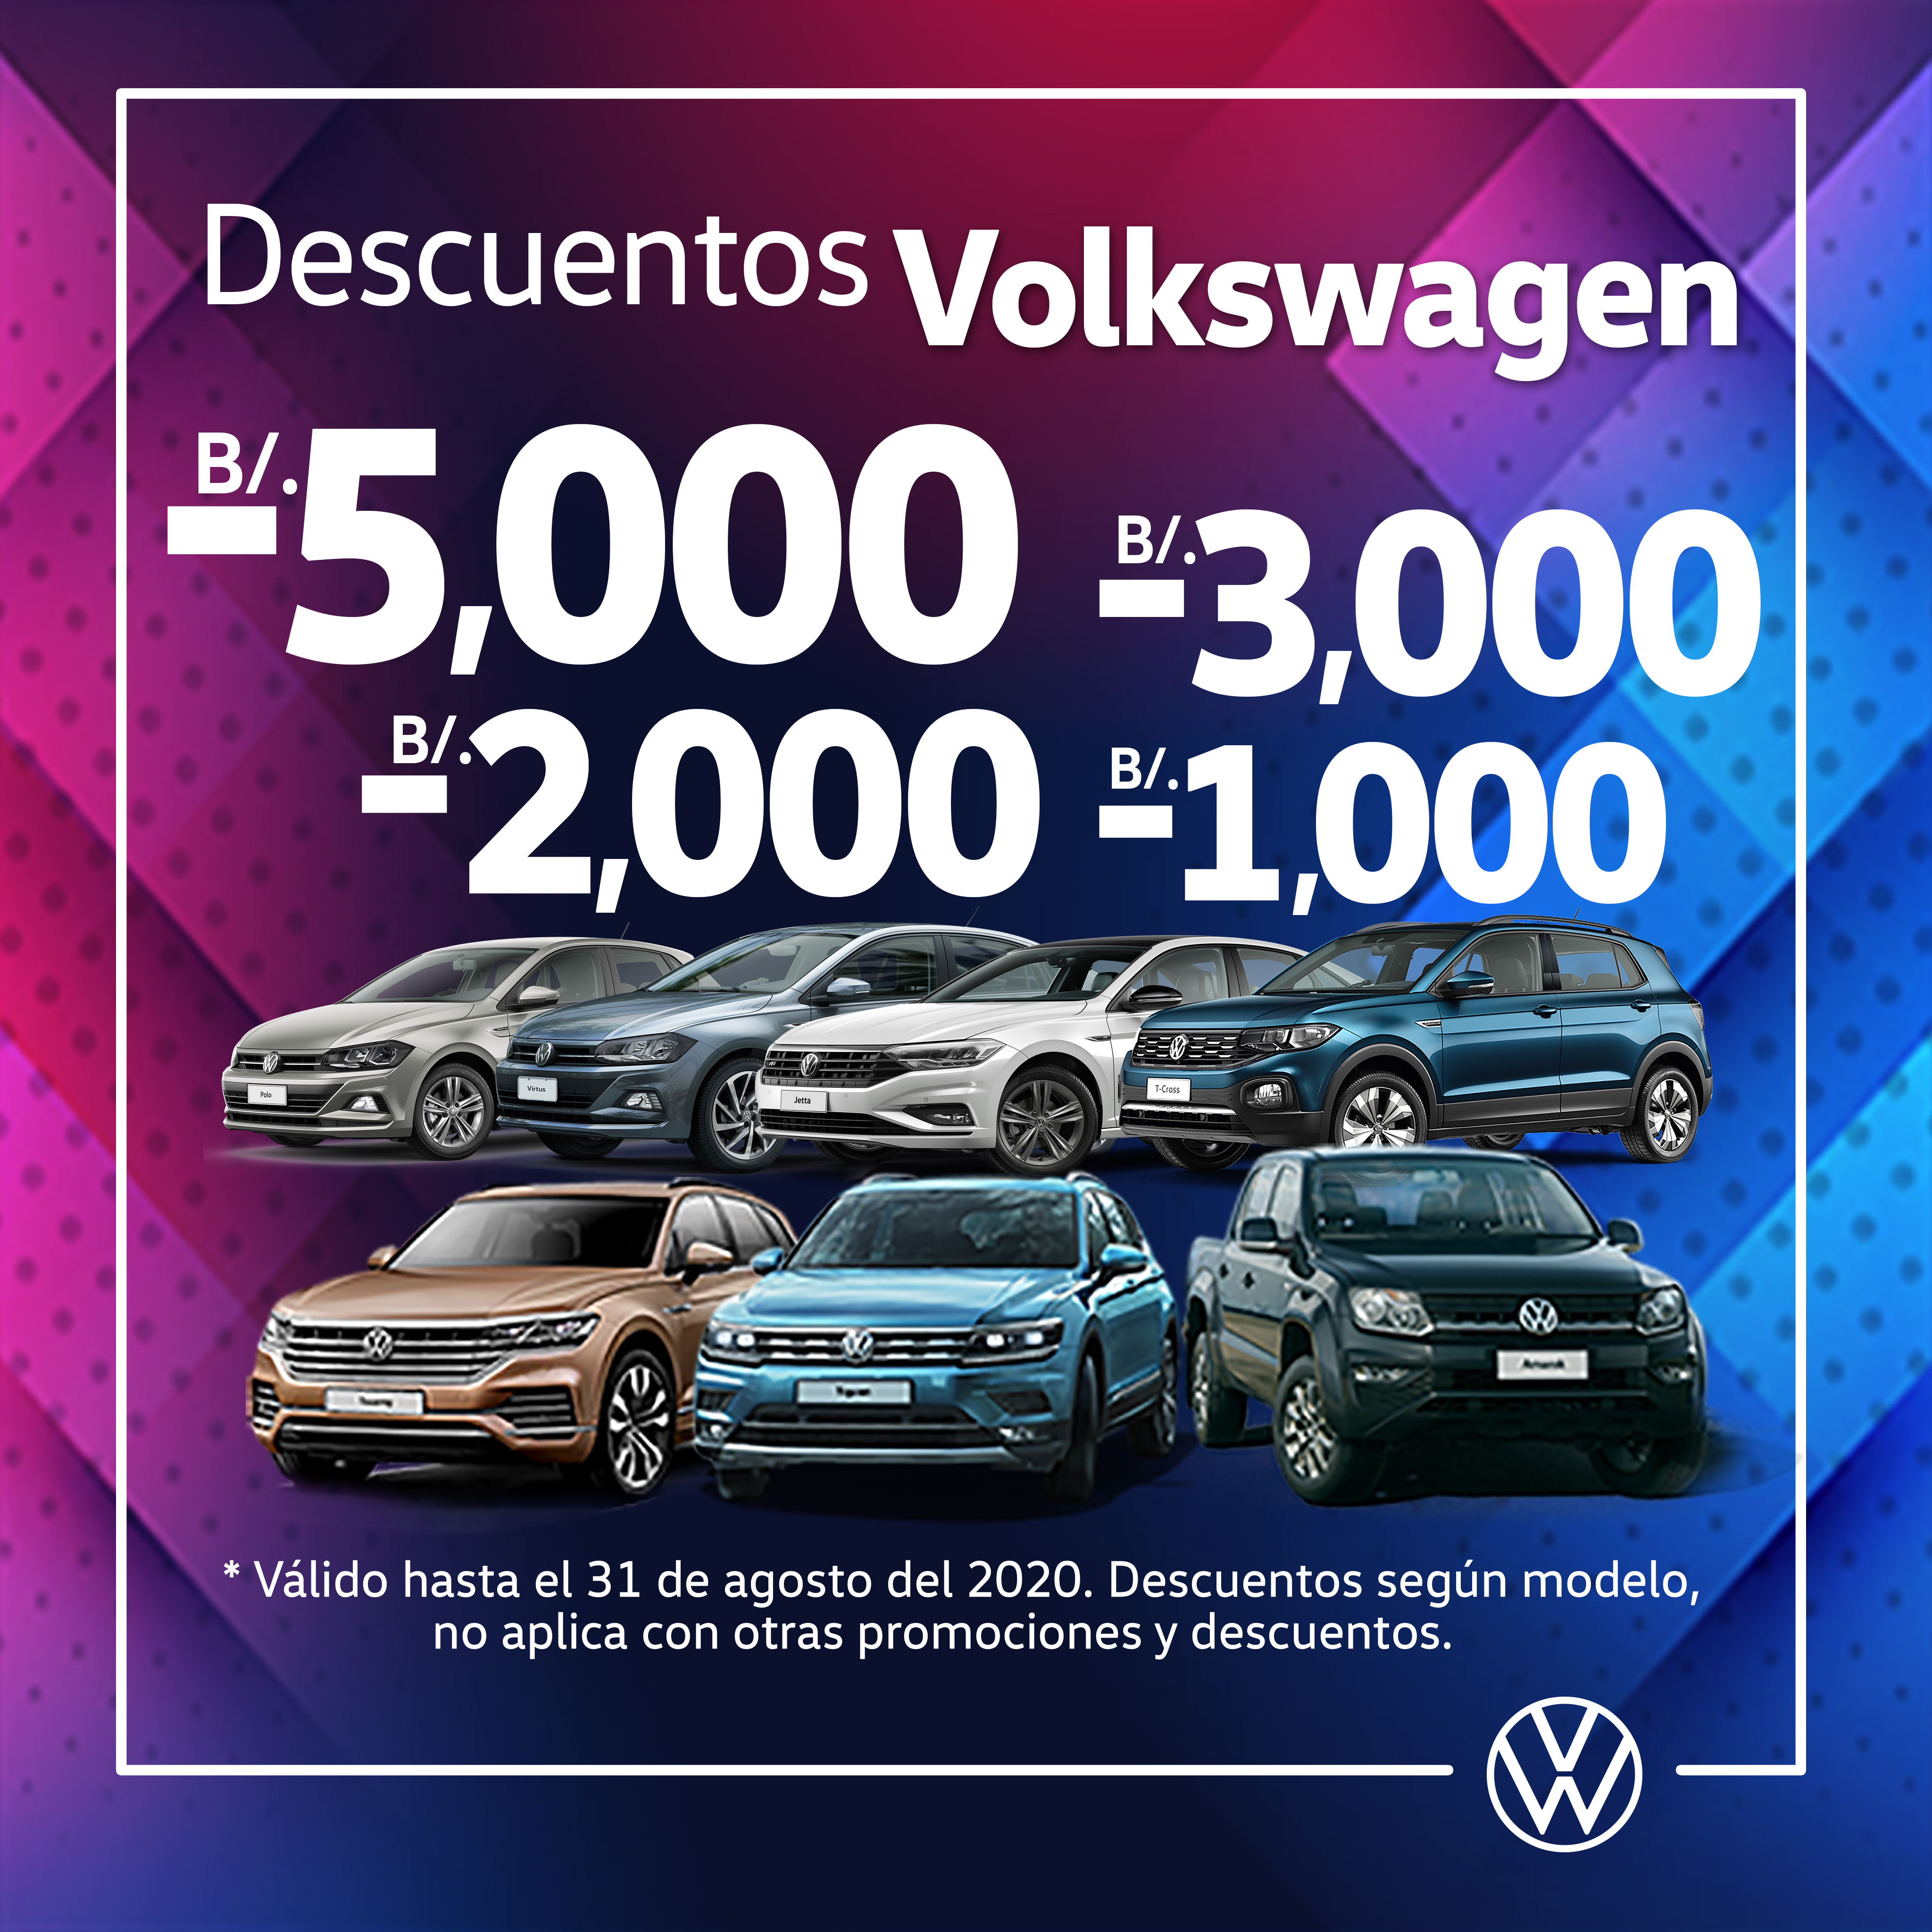 Volkswagen Panamá auf Twitter: „¿Pensando en cambiar de aires? Empieza por  tu nave. *Promoción válida del 1 al 31 de agosto de 2020 o hasta agotar  existencia. Aplica para la venta de